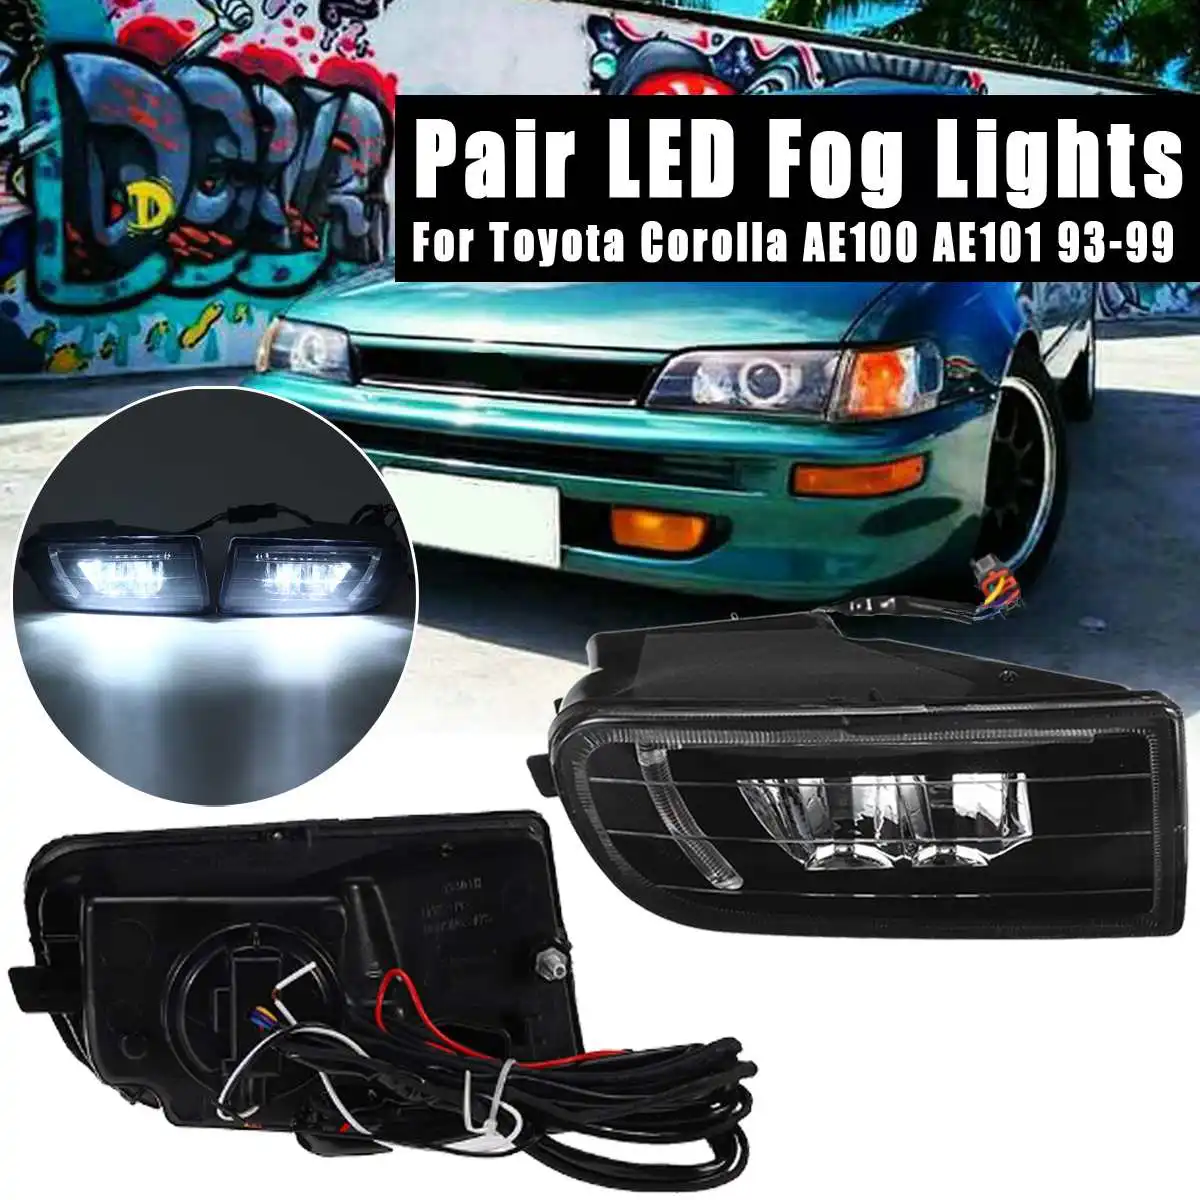 

1 Pair Bright Fog Light Fog Lamp Assembly Super For toyota Corolla AE100 AE101 1993 1994 1995 1996 1997 1998 1999 Led Fog Lights